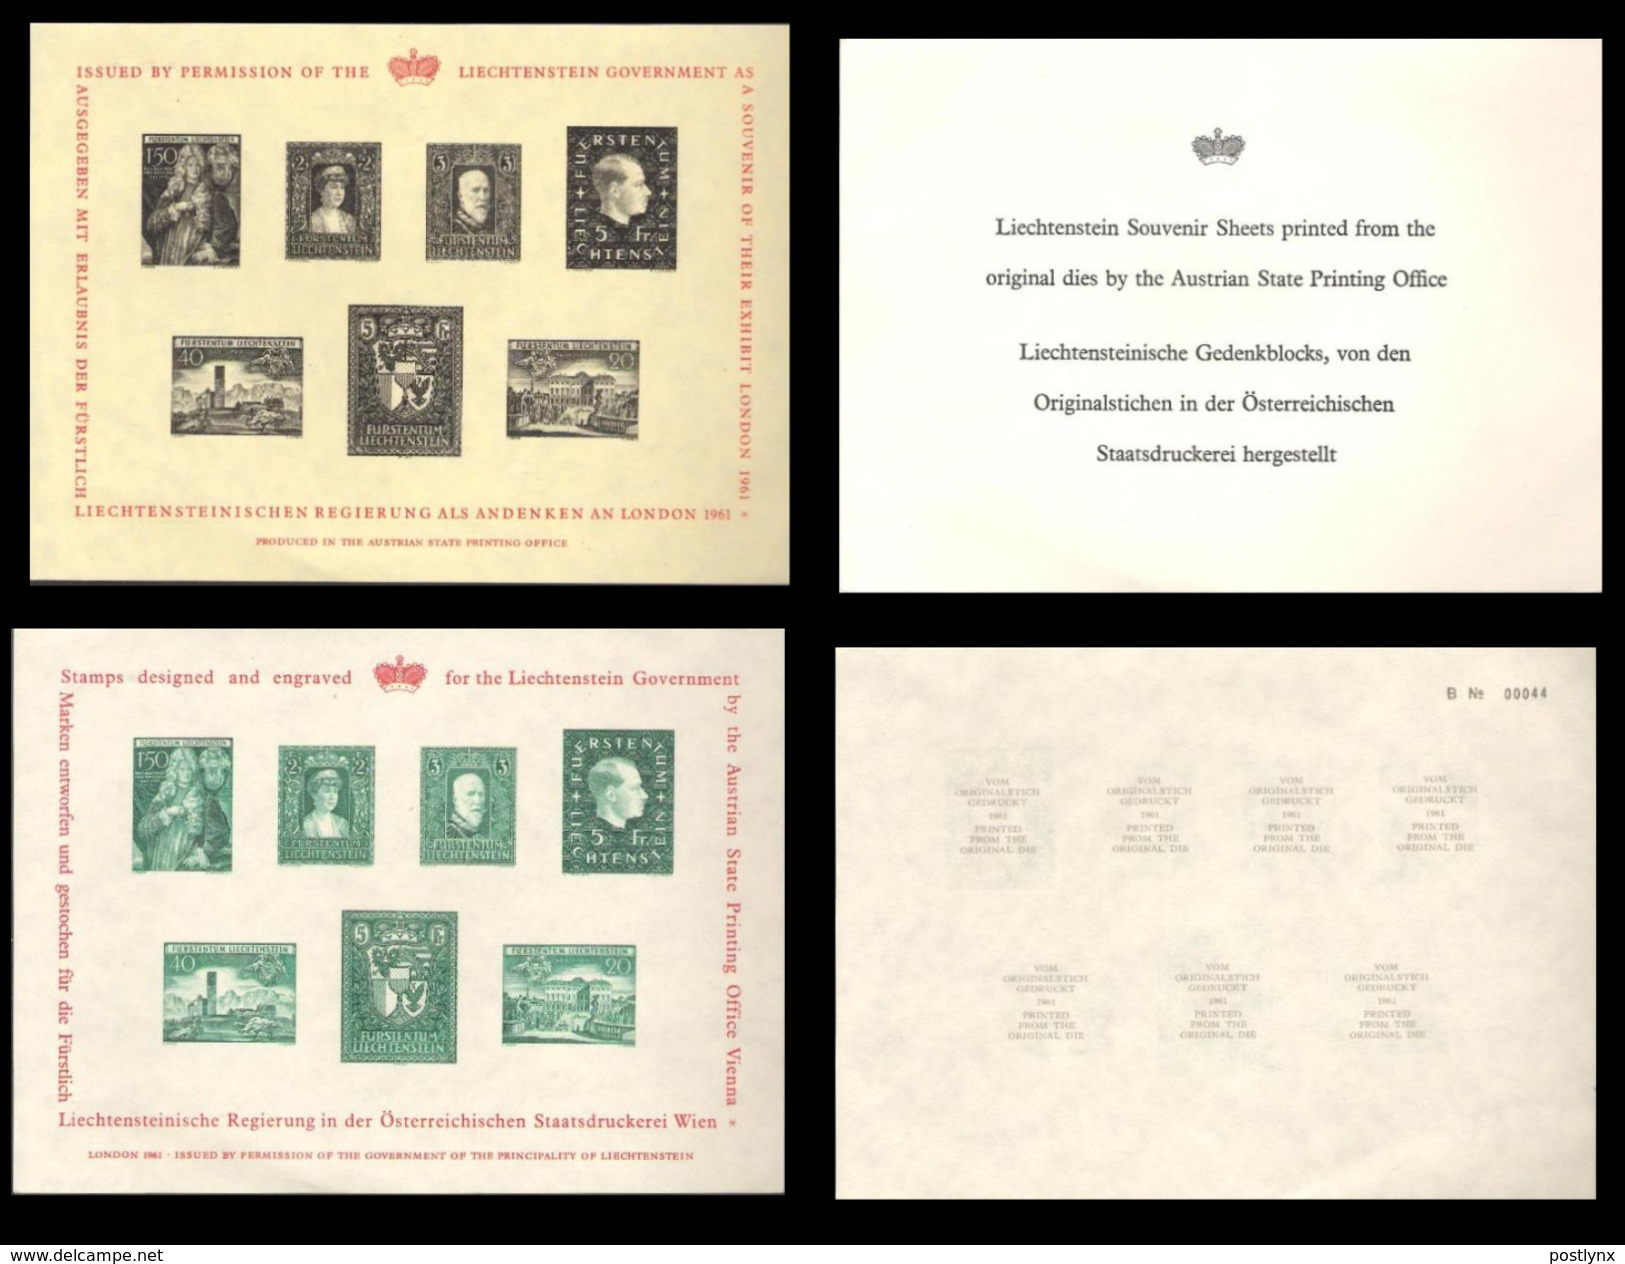 GREAT BRITAIN 1961 London Stamp Exb. Liechtenstein IMPERF.SHEETLETS.2 GB - Errores & Curiosidades